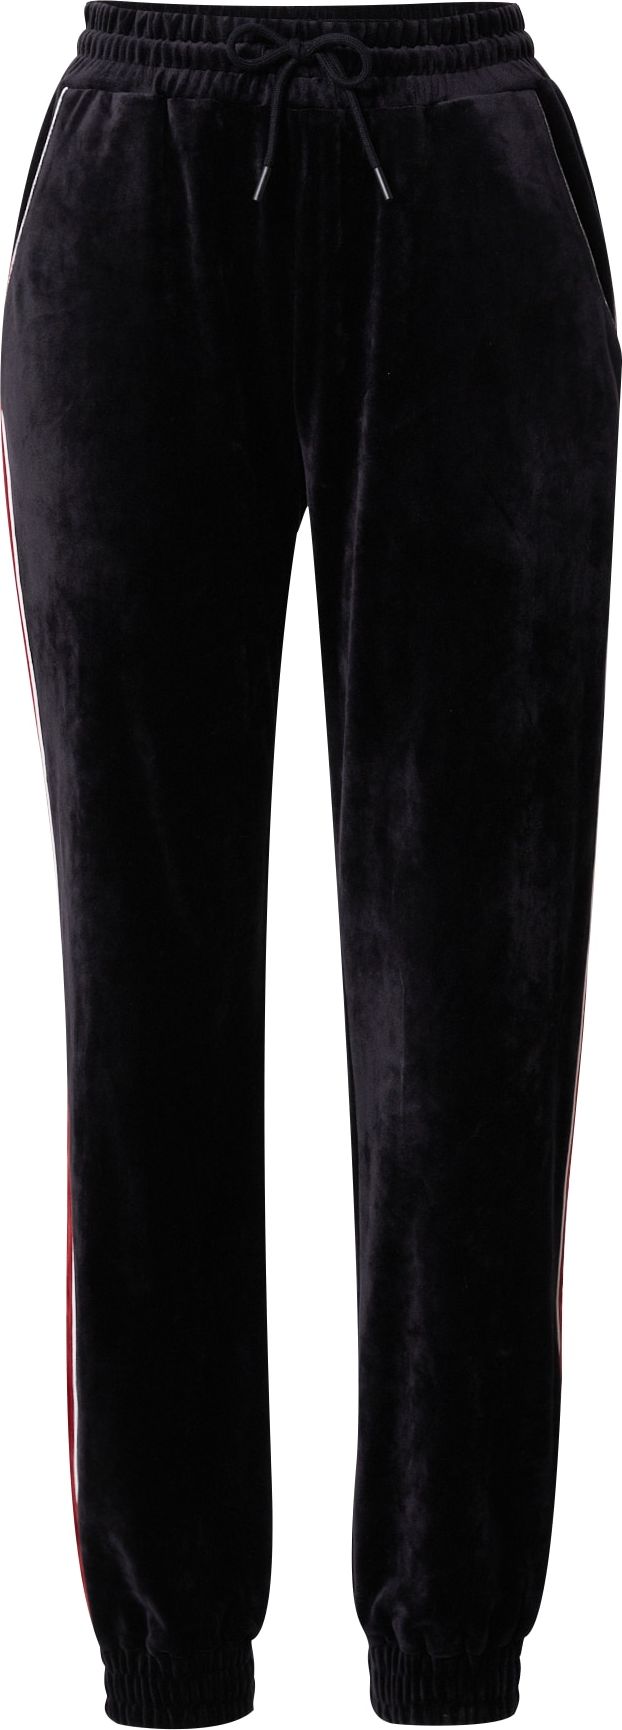 VIERVIER Kalhoty 'Lene' bordó / černá